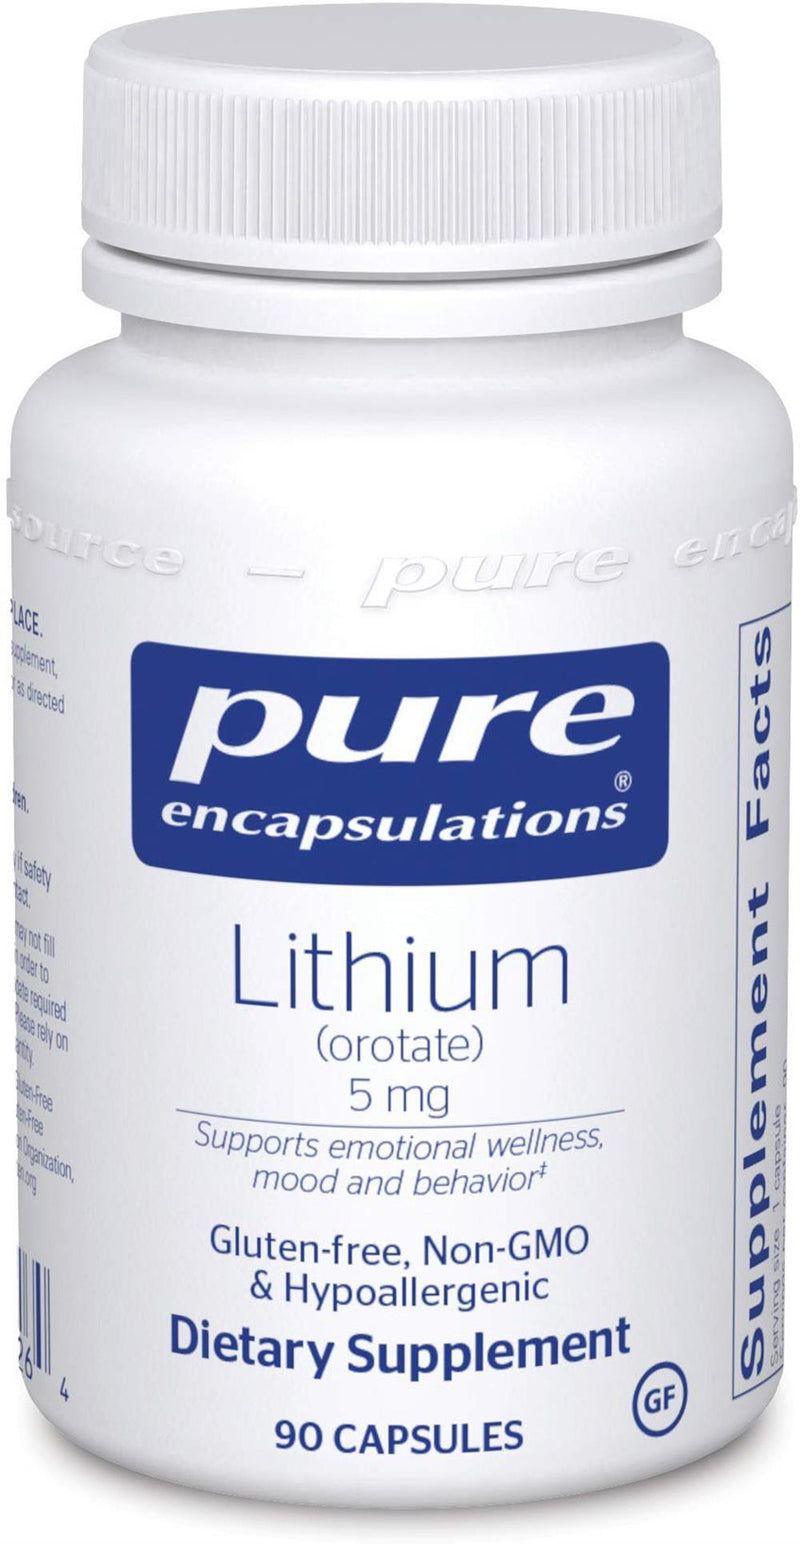 Pure Encapsulations Lithium (orotate) 5 mg -- 90 Capsules